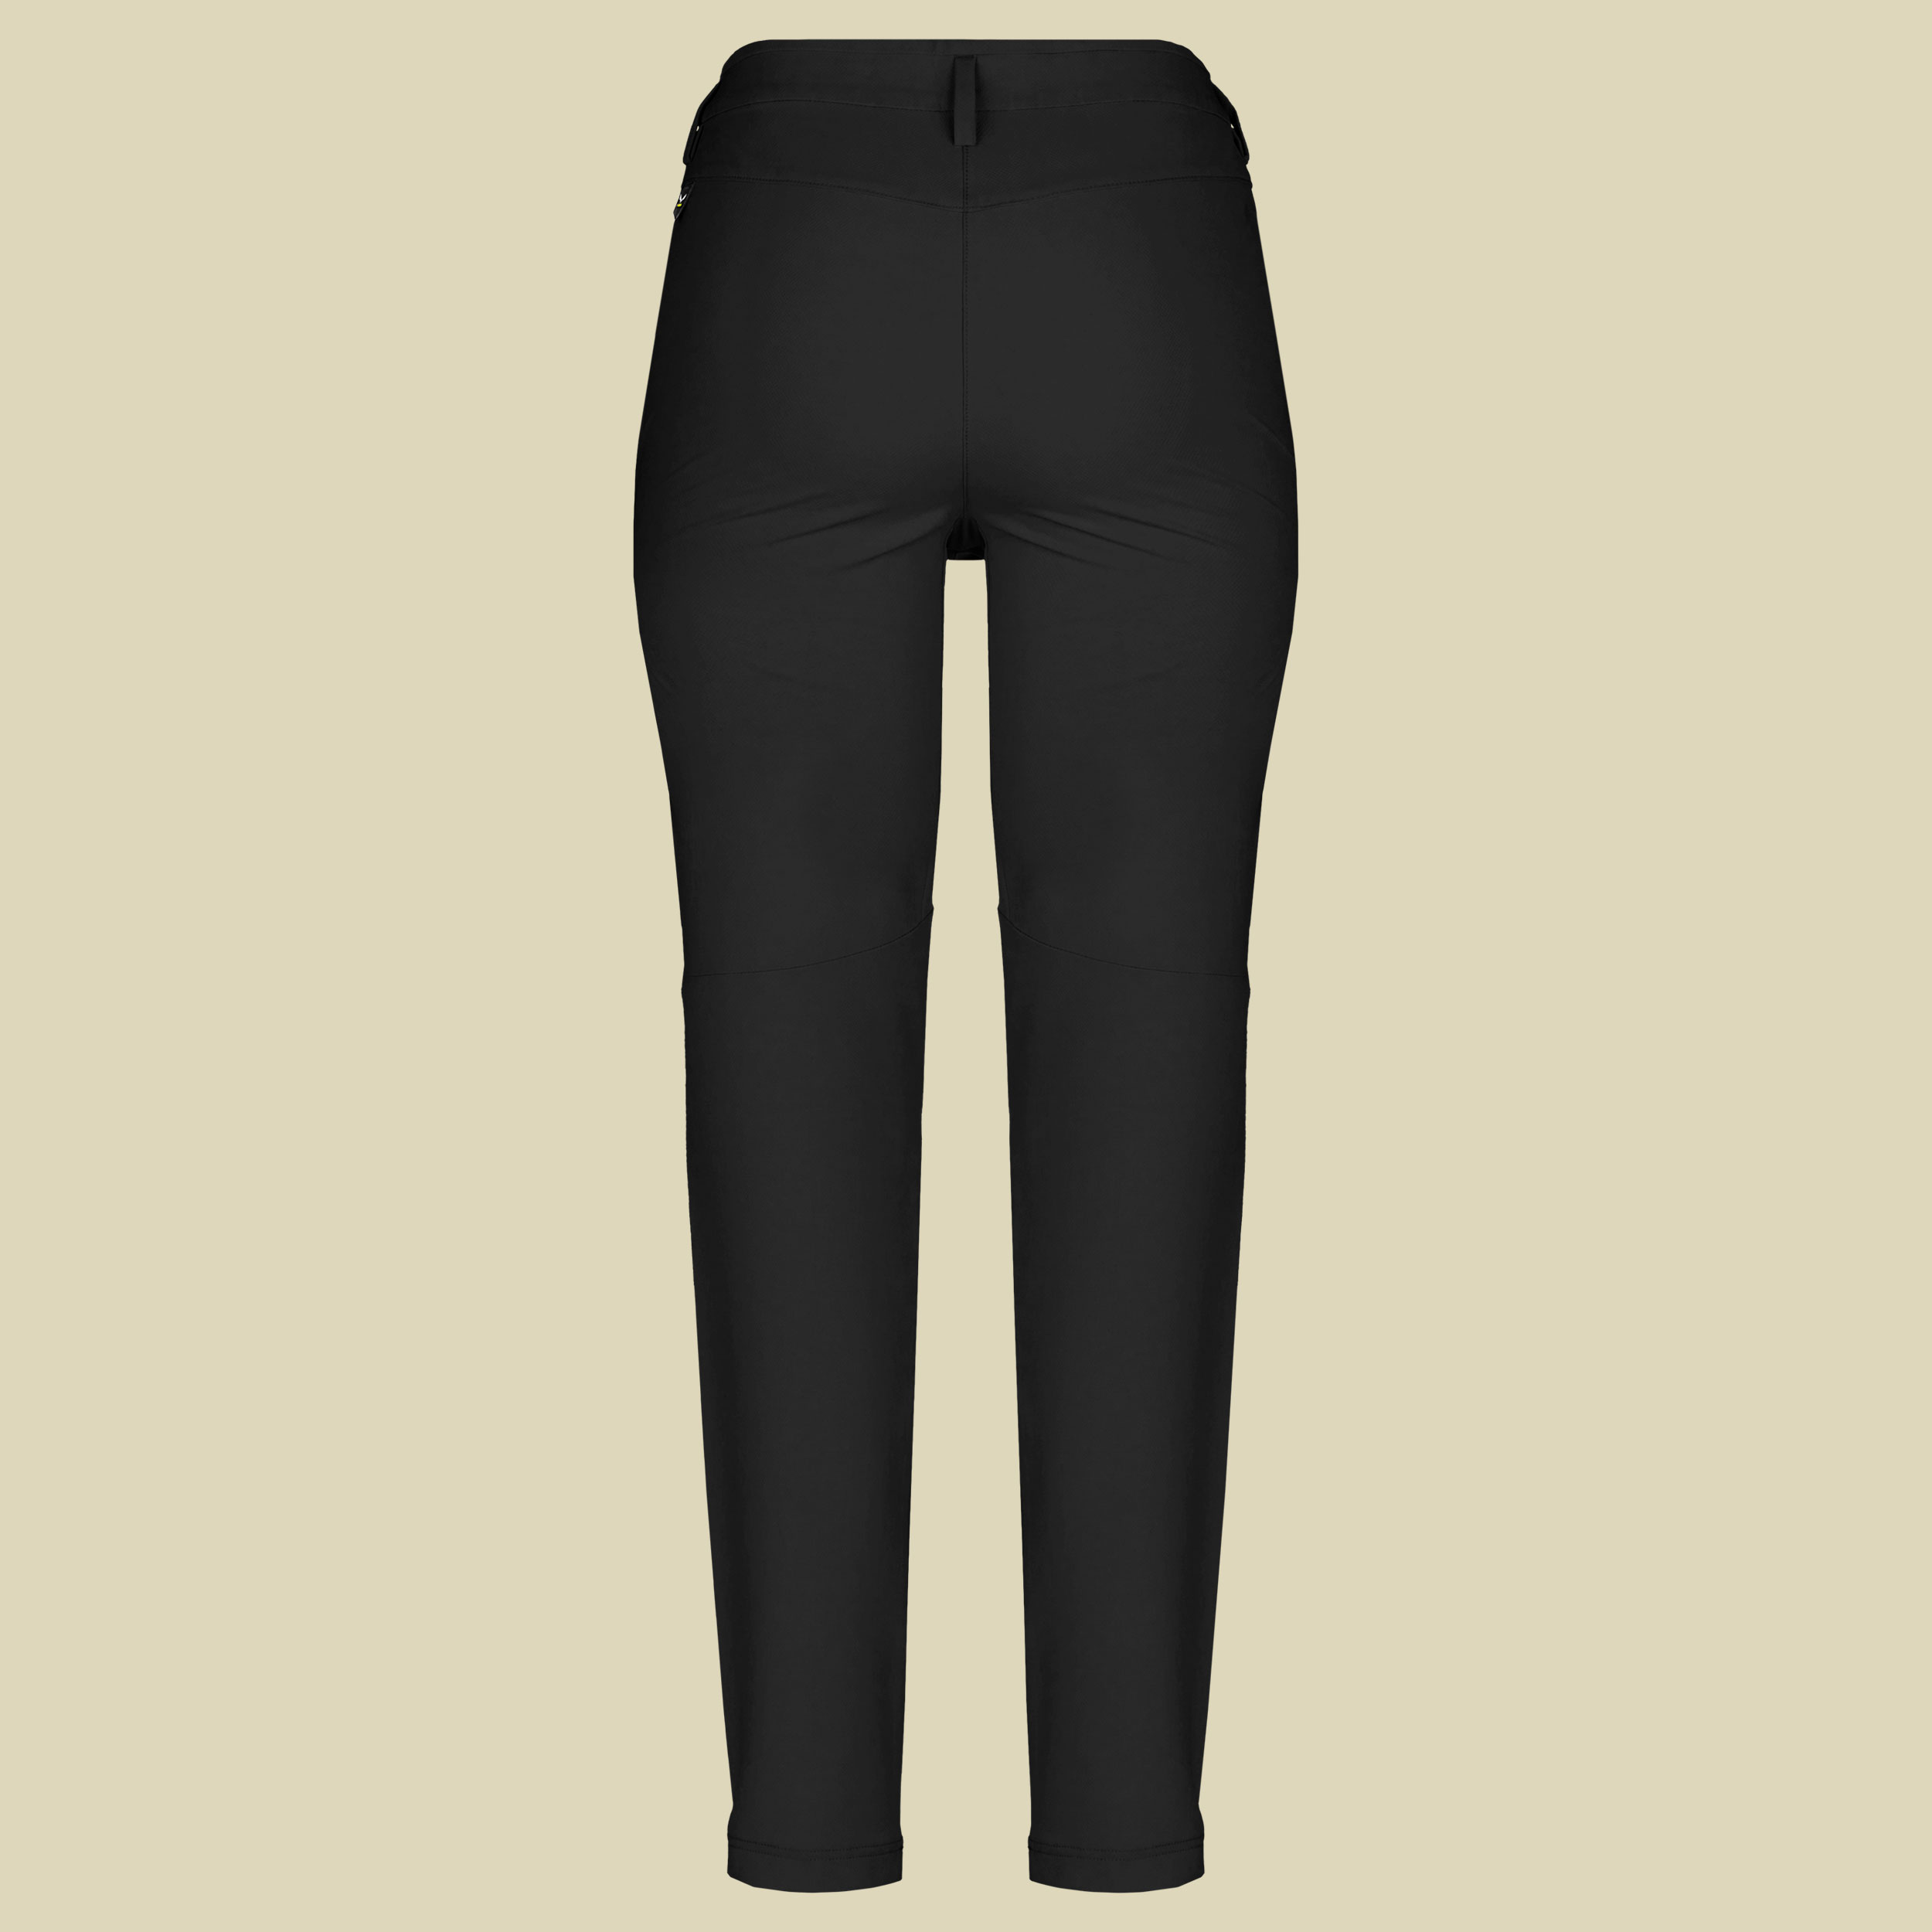 Puez Dolomitic 2 DST Pant Women Größe 40-short Farbe black out